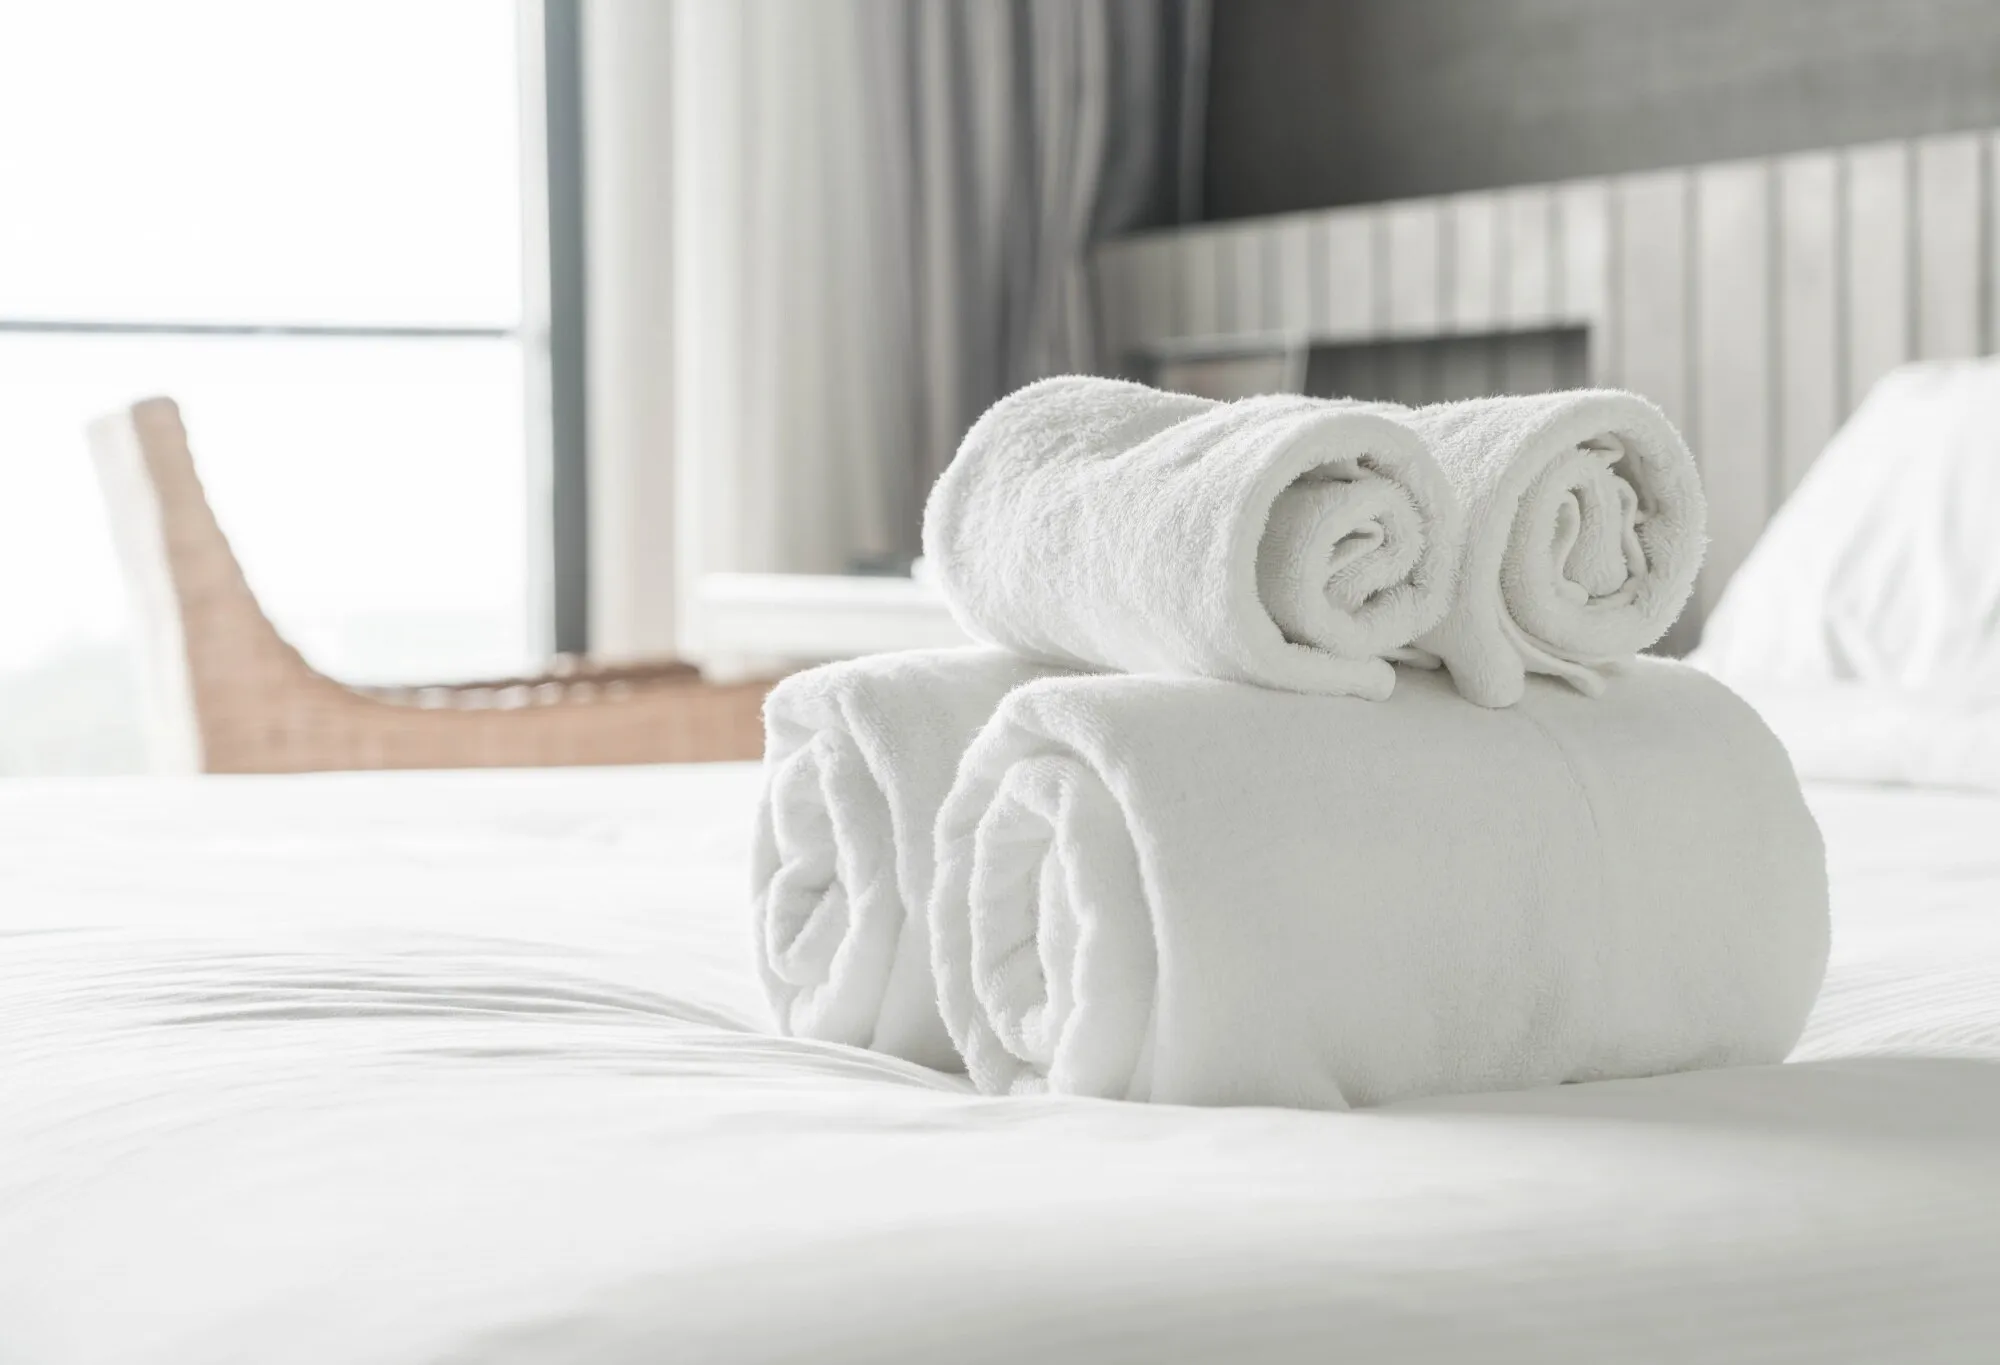 Herontdek de zachtheid van je handdoeken: een eenvoudige manier om stijve en schurende handdoeken weer zacht te maken